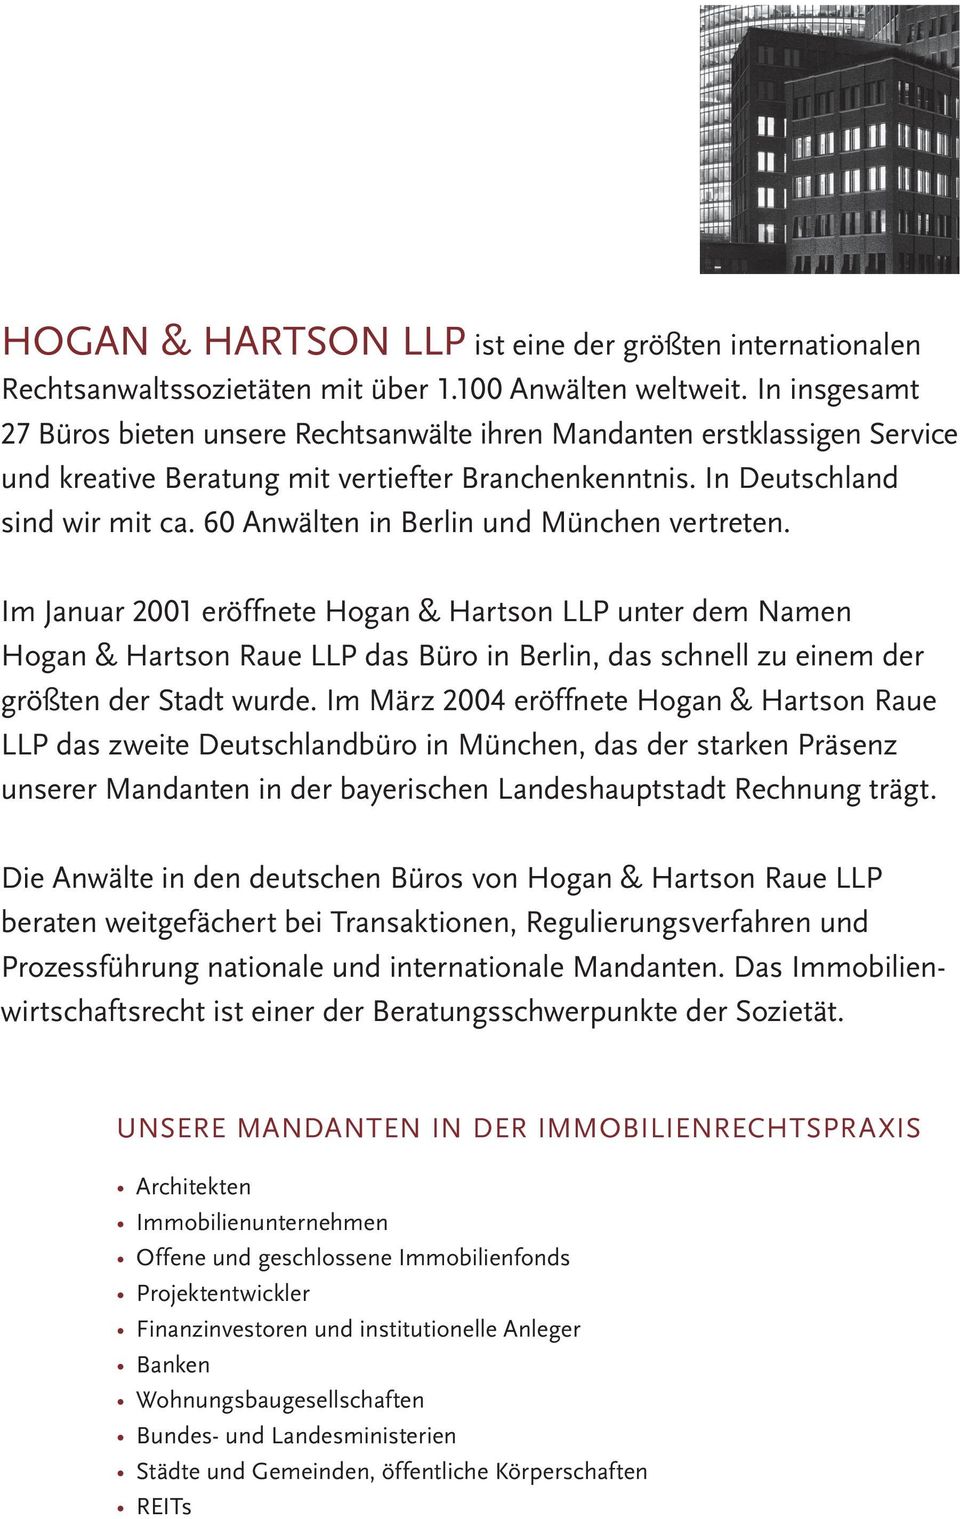 60 Anwälten in Berlin und München vertreten. Im Januar 2001 eröffnete Hogan & Hartson LLP unter dem Namen Hogan & Hartson Raue LLP das Büro in Berlin, das schnell zu einem der größten der Stadt wurde.